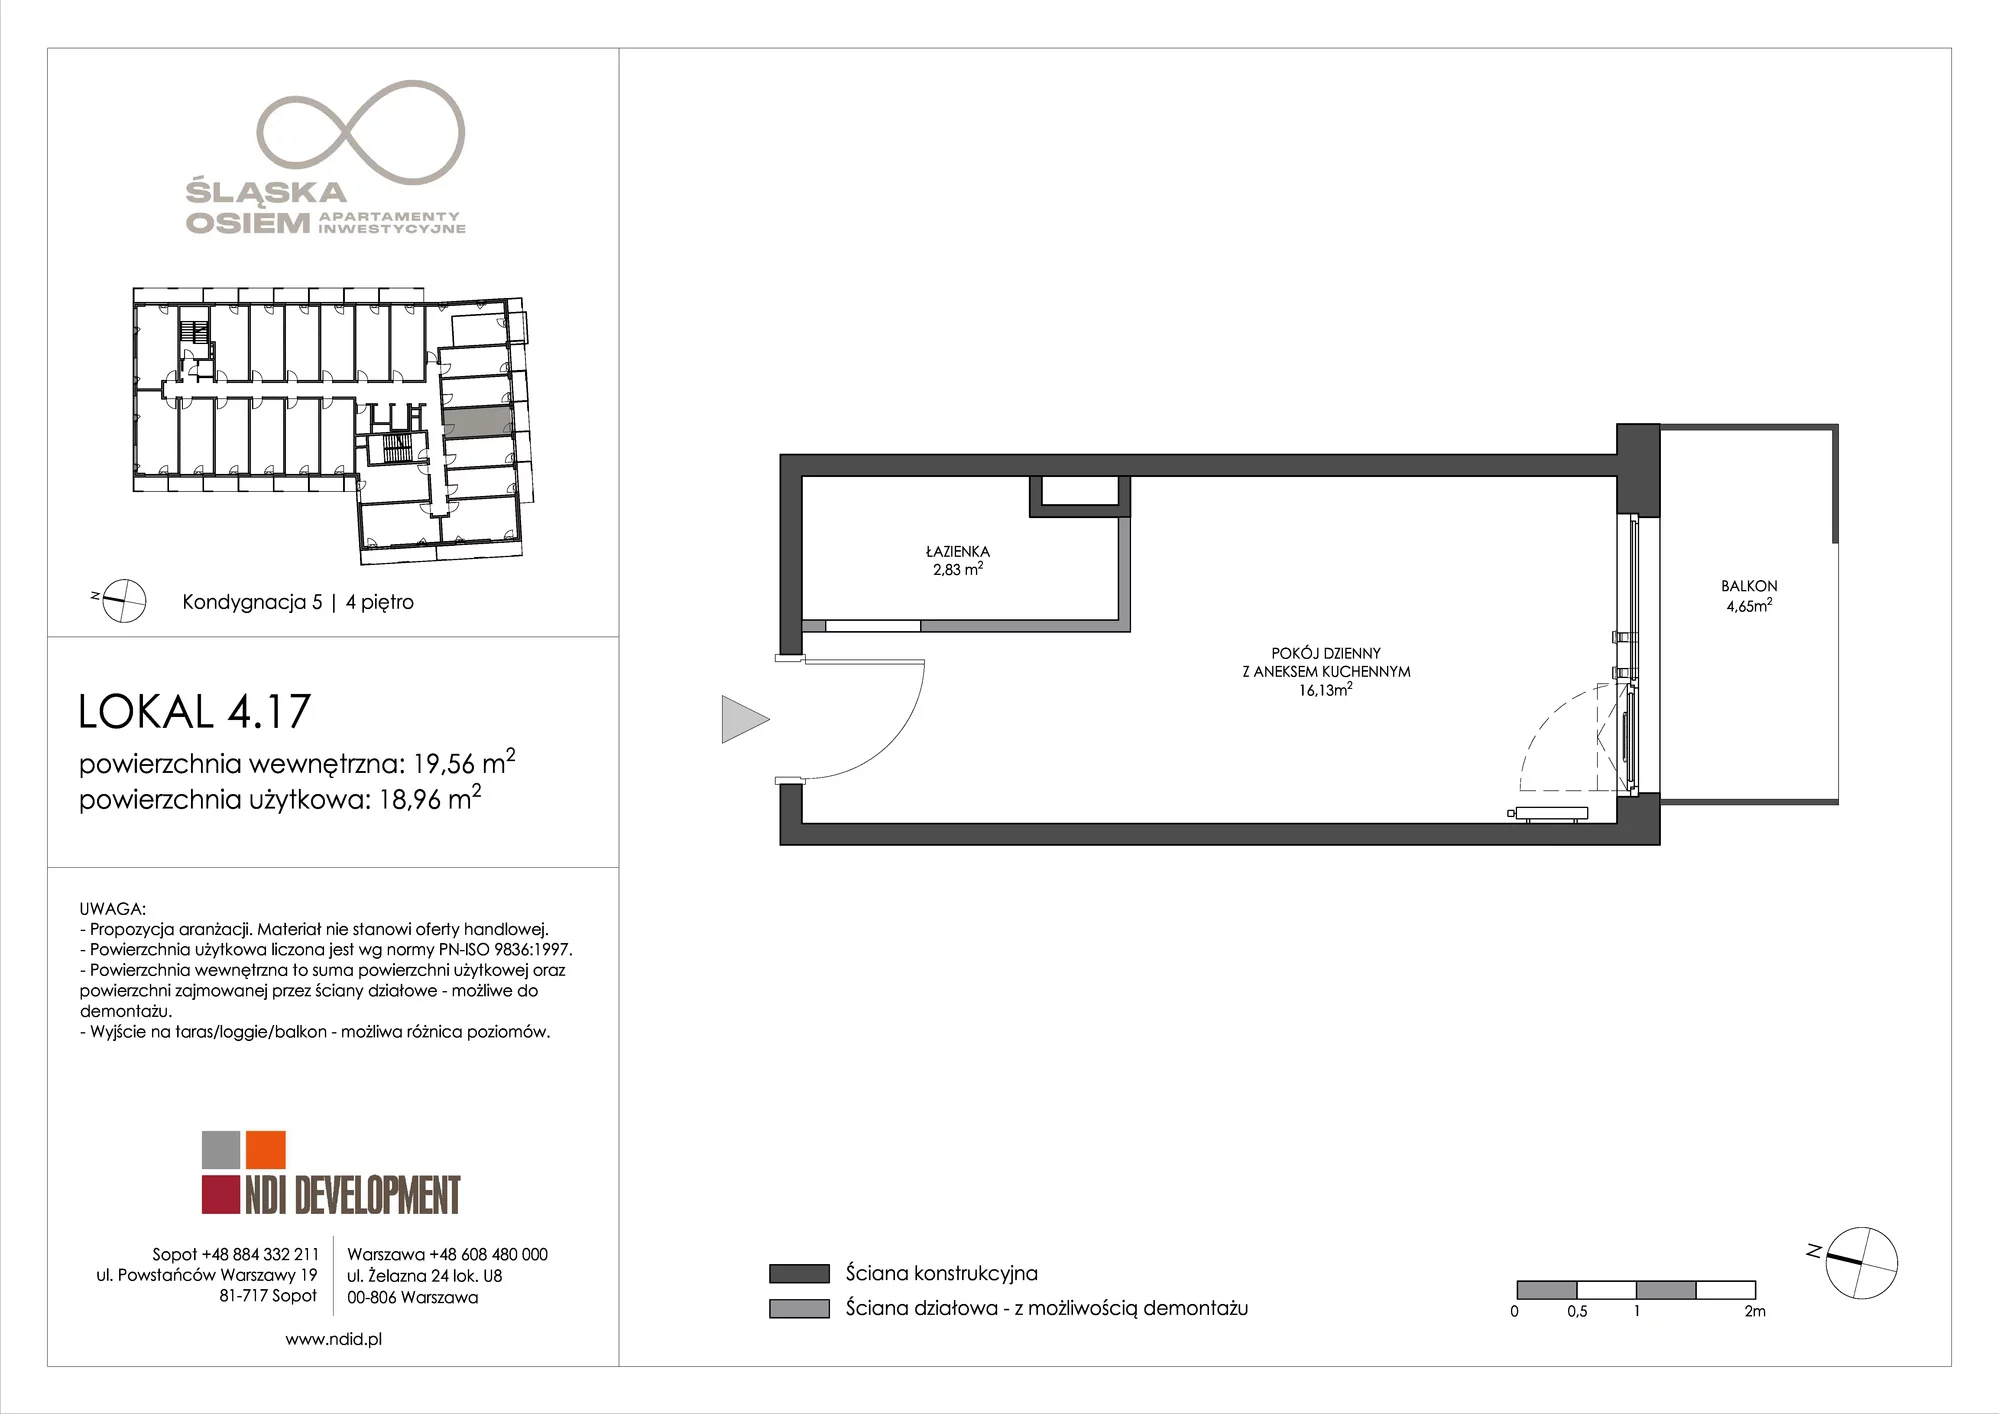 Apartament inwestycyjny 19,56 m², piętro 4, oferta nr 4.17, Śląska Osiem, Gdańsk, Przymorze, ul. Śląska 8